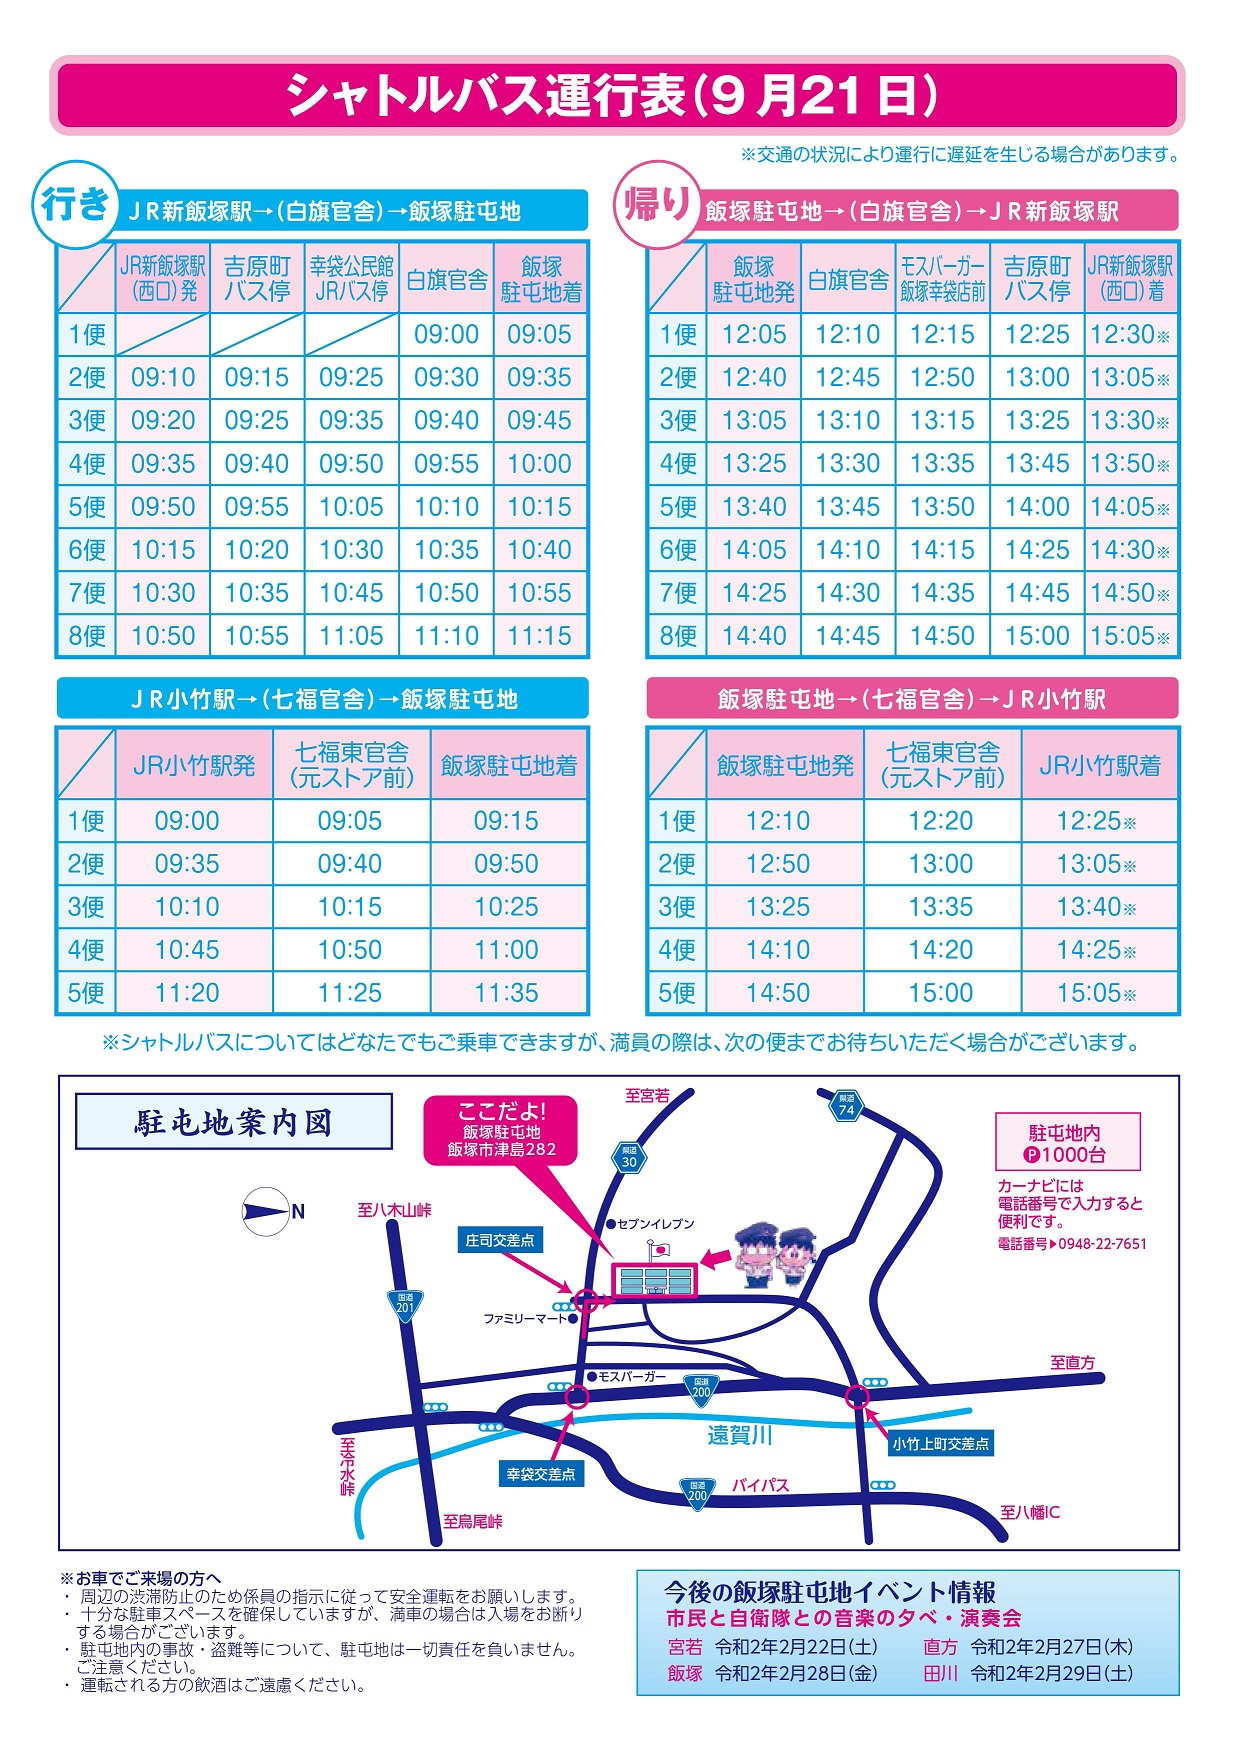 飯塚駐屯地 創立53周年記念行事：シャトルバス運行表･駐屯地案内図